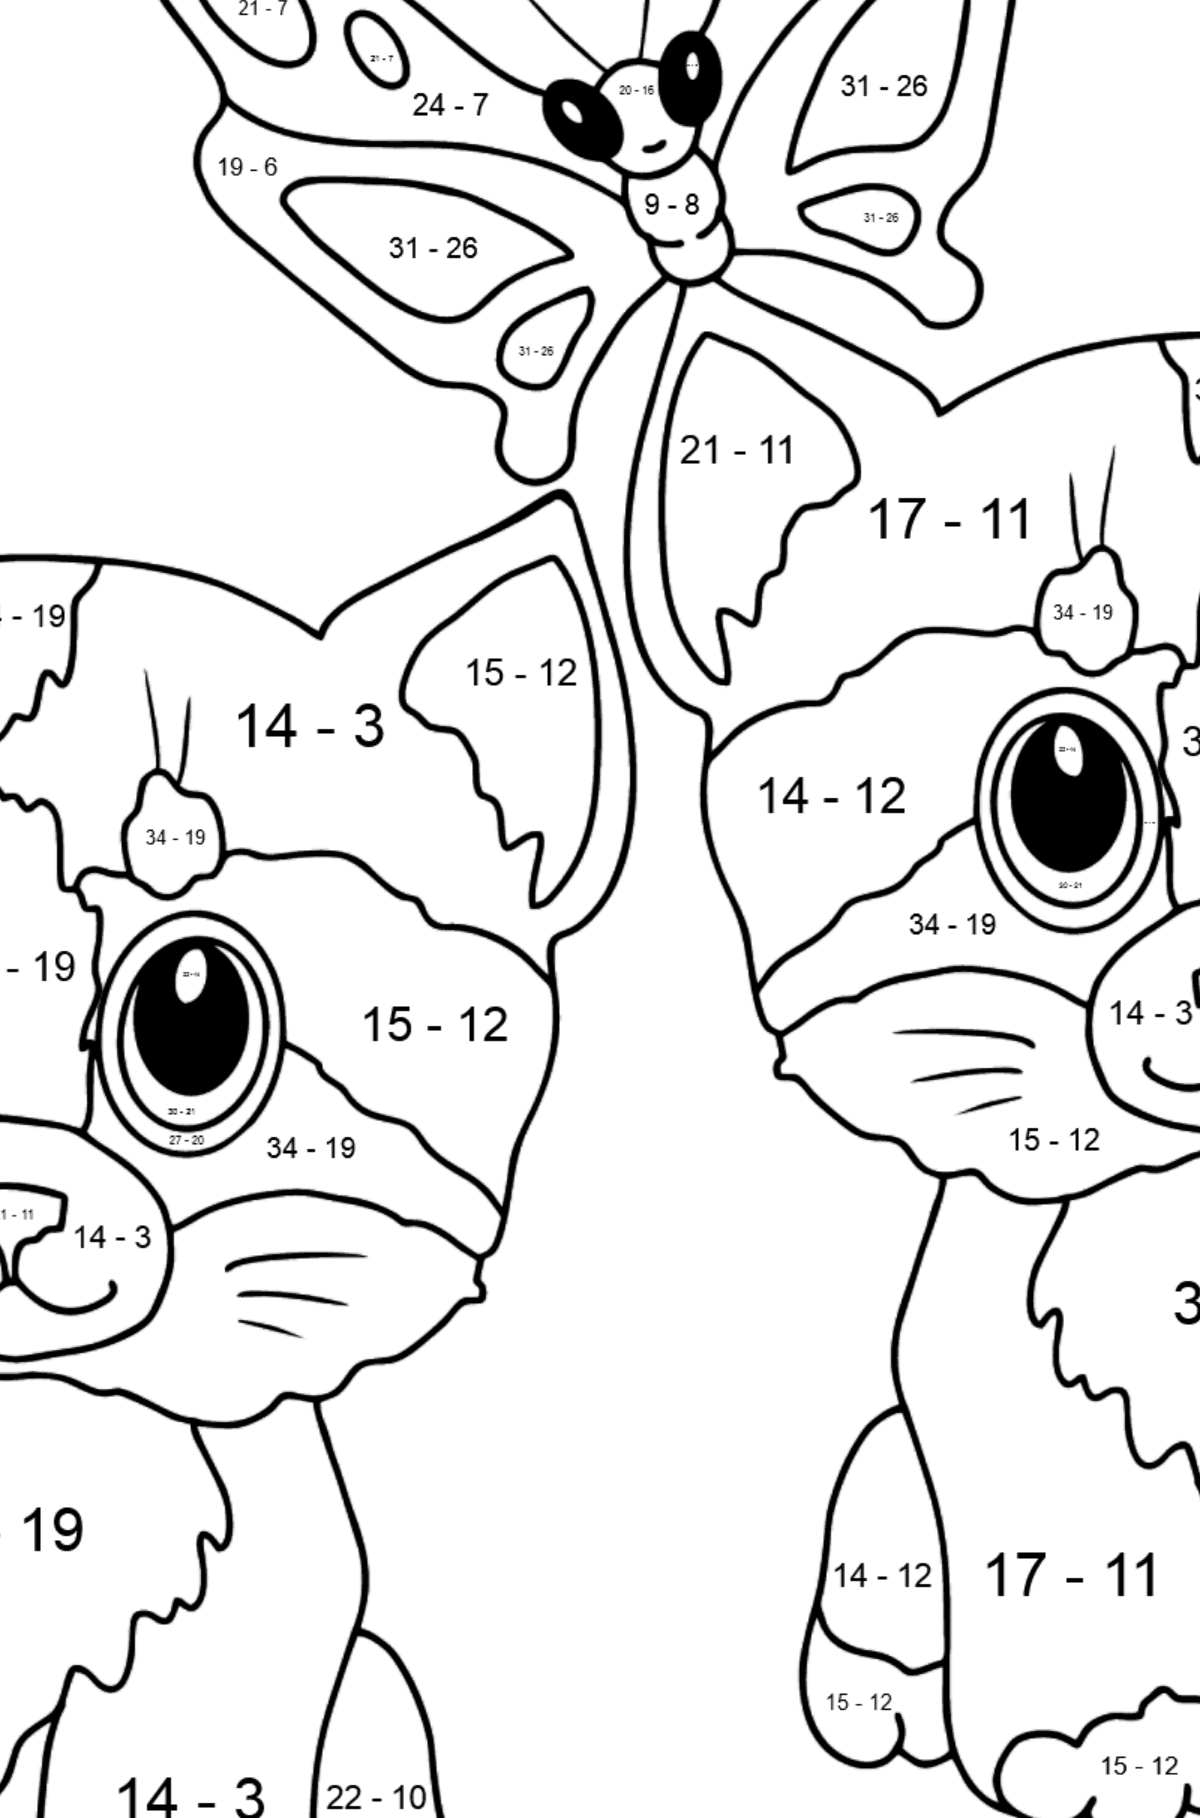 Disegno da colorare di simpatici gattini per i più piccoli - Colorazione matematica - Sottrazione per bambini